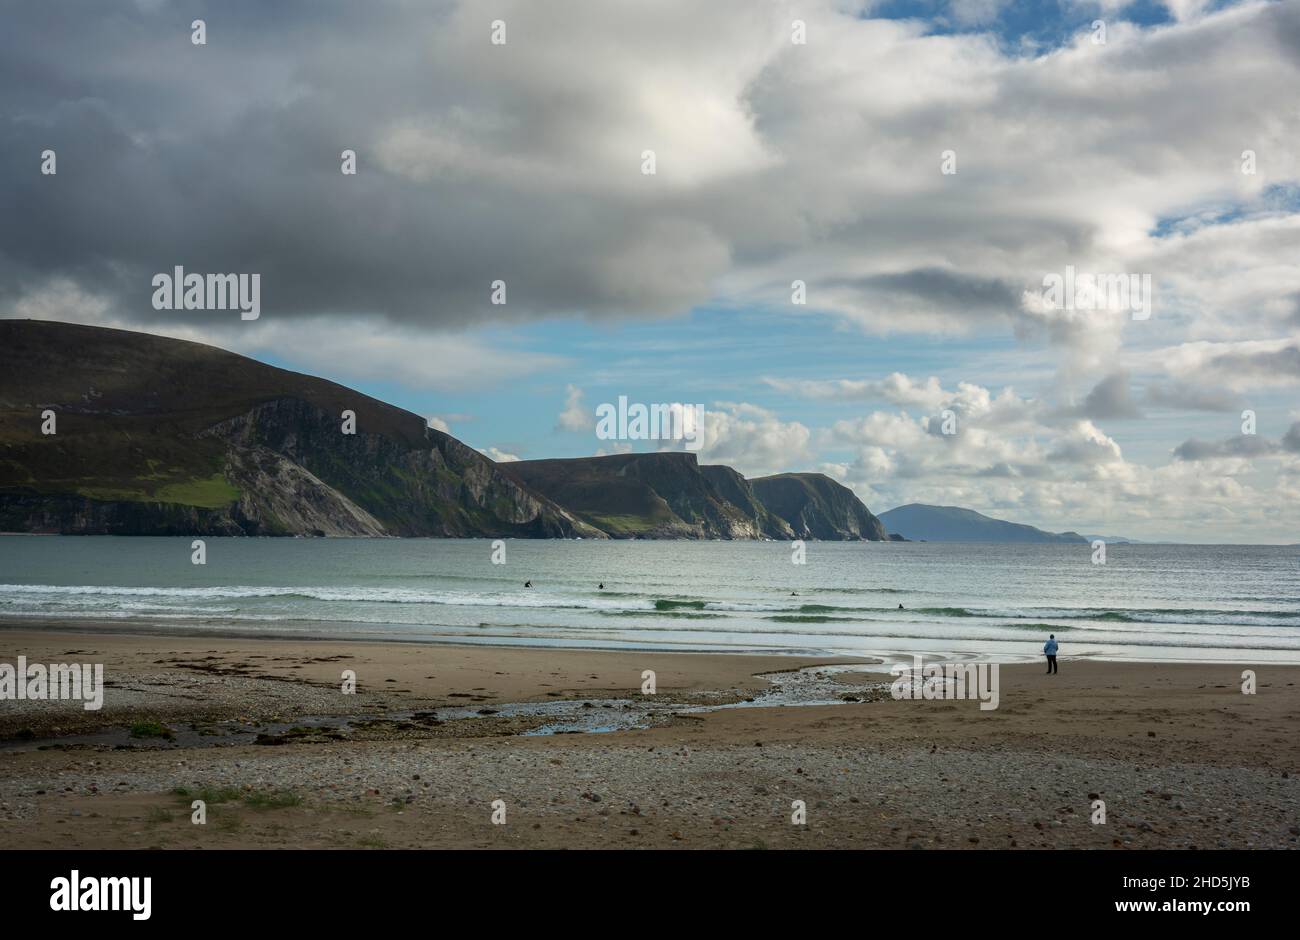 Eine Person beobachtet einige Schwimmer am wunderschönen Keel Beach mit den Minaun Cliffs auf Achill Island im County Mayo in Irland Stockfoto